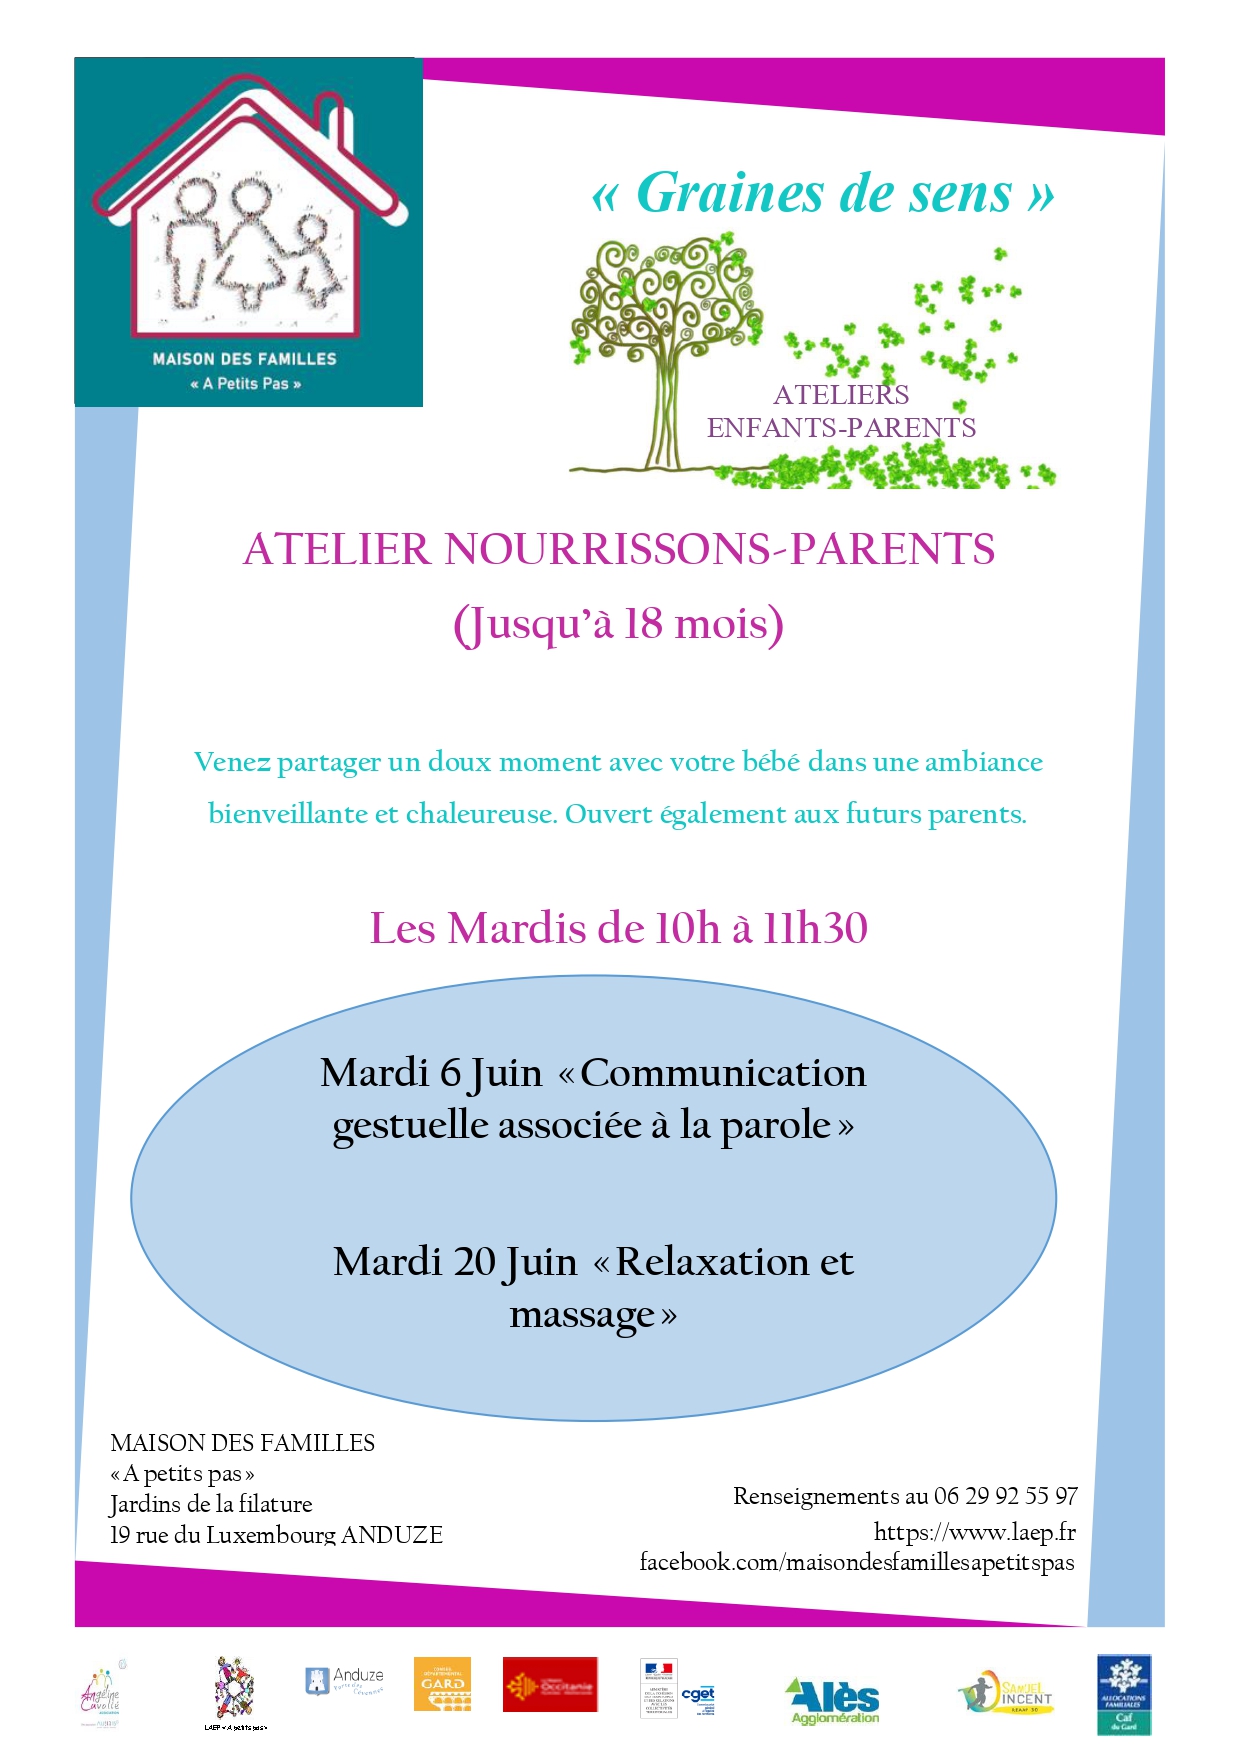 Atelier Nourrissons/Parents (jusqu'à 18 mois) "Communication gestuelle associé à la parole"